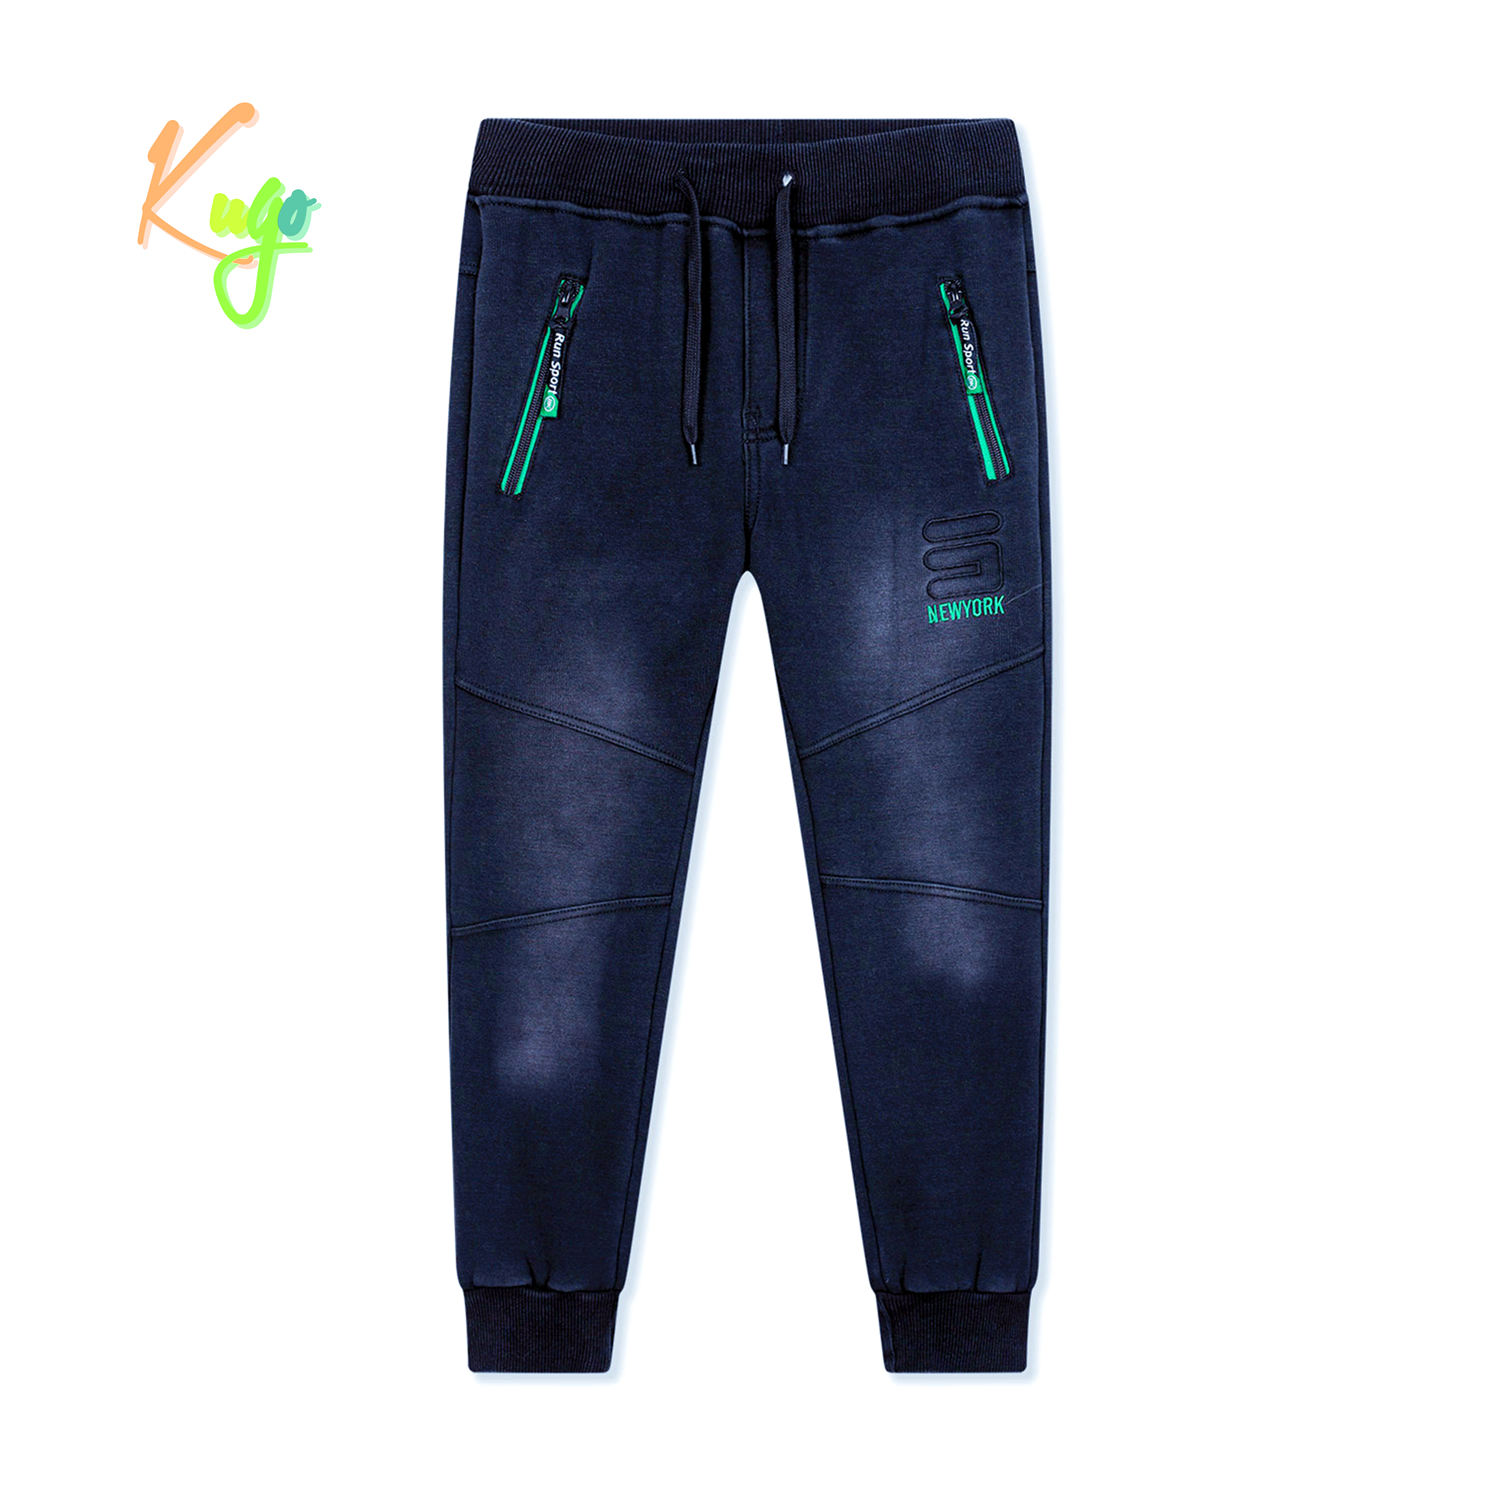 Chlapecké riflové kalhoty/ tepláky, zateplené - KUGO FK0318, modrá Barva: Modrá, Velikost: 146